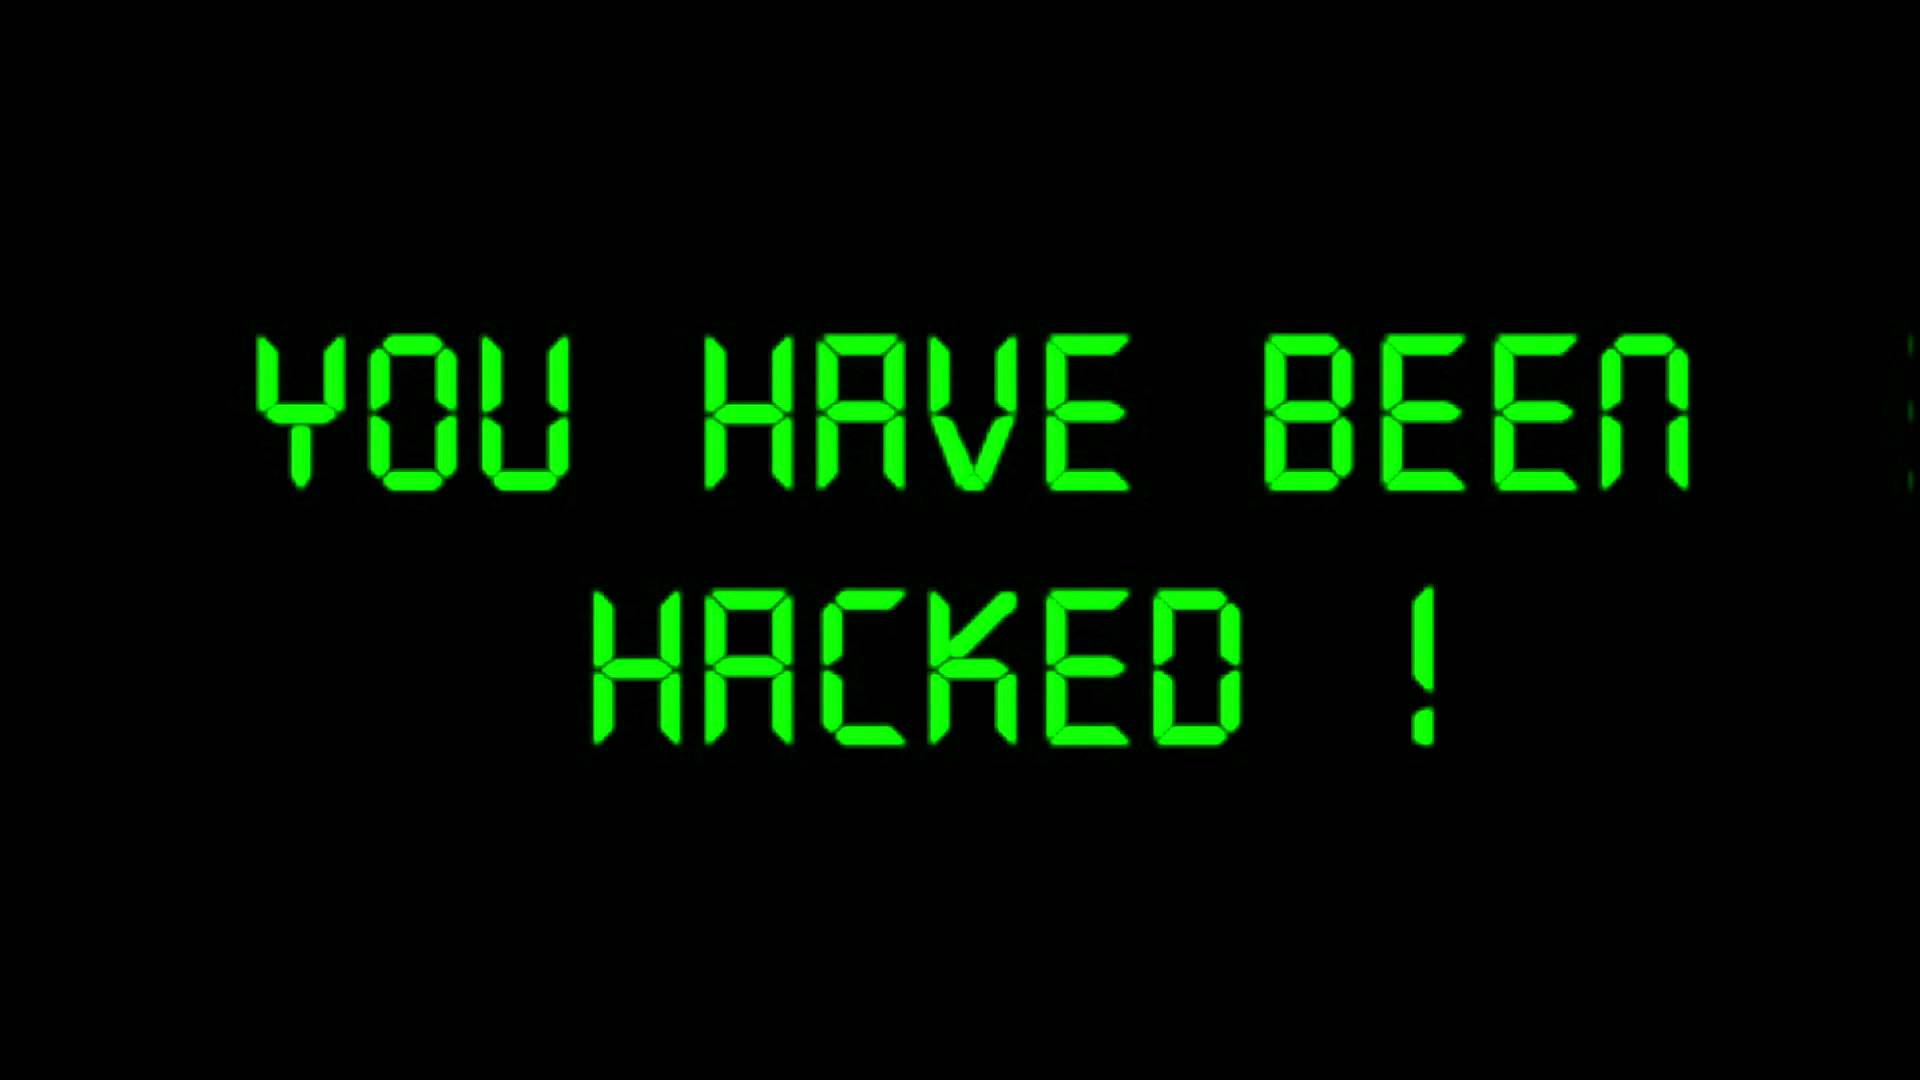 Getting-hacked-harmful-website.jpg